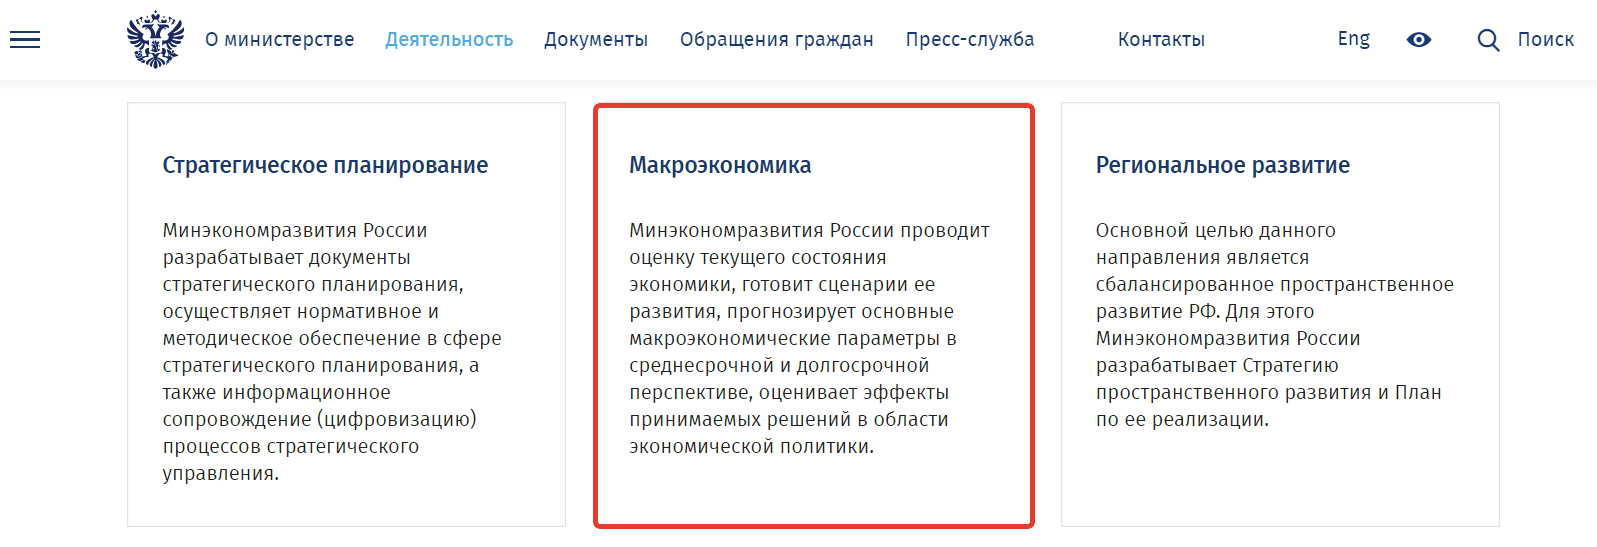 Поиск индексов-дефляторов на сайте Минэкономразвития России алгоритм шаг 3